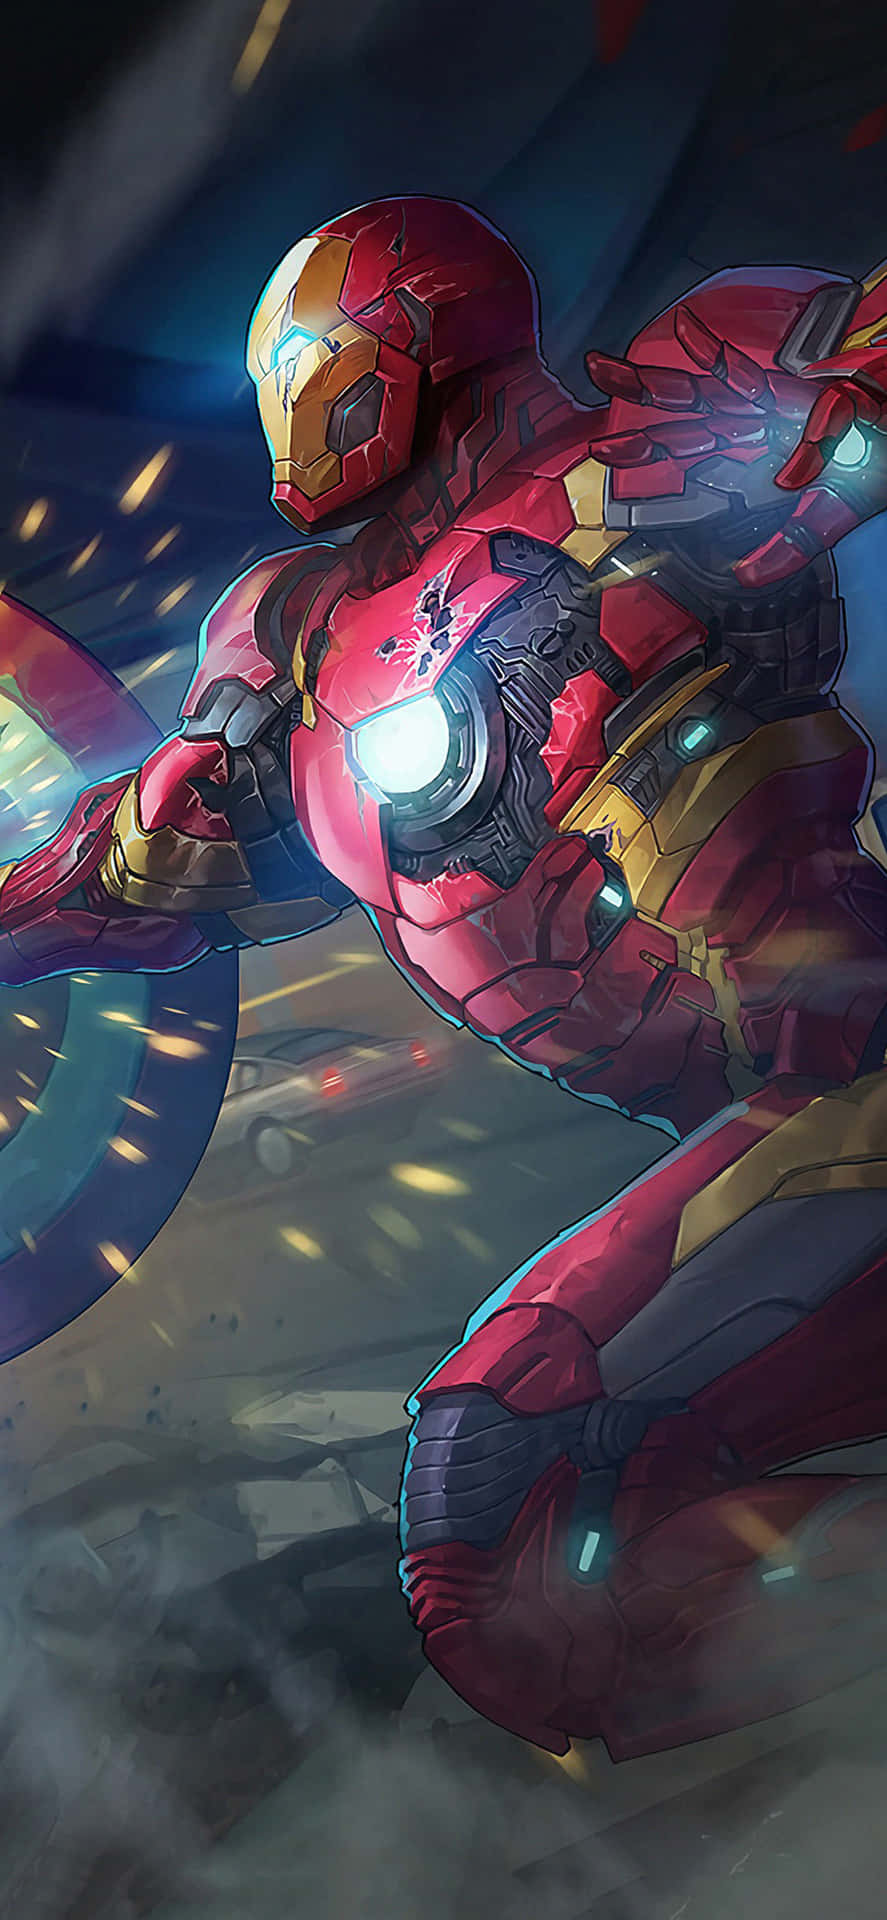 Fondode Pantalla De Iron Man Fanart Dibujado De Iphone X Con Traje Dañado.